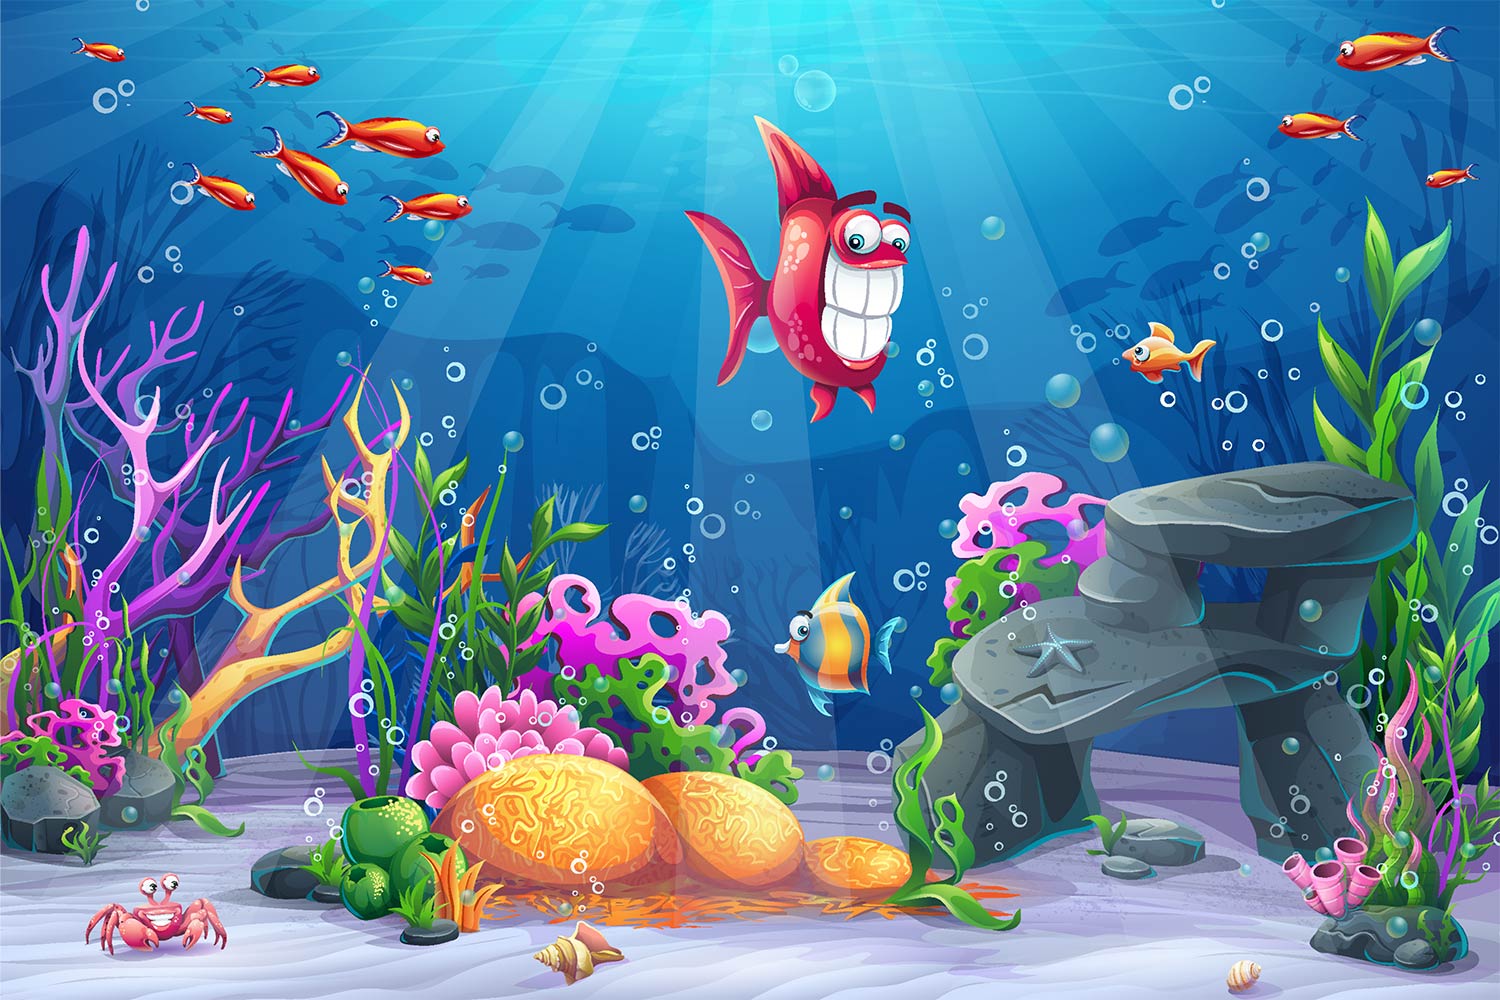 Happy Fish - Underwater Cartoon Ocean Background - 1500x1000 Wallpaper -  